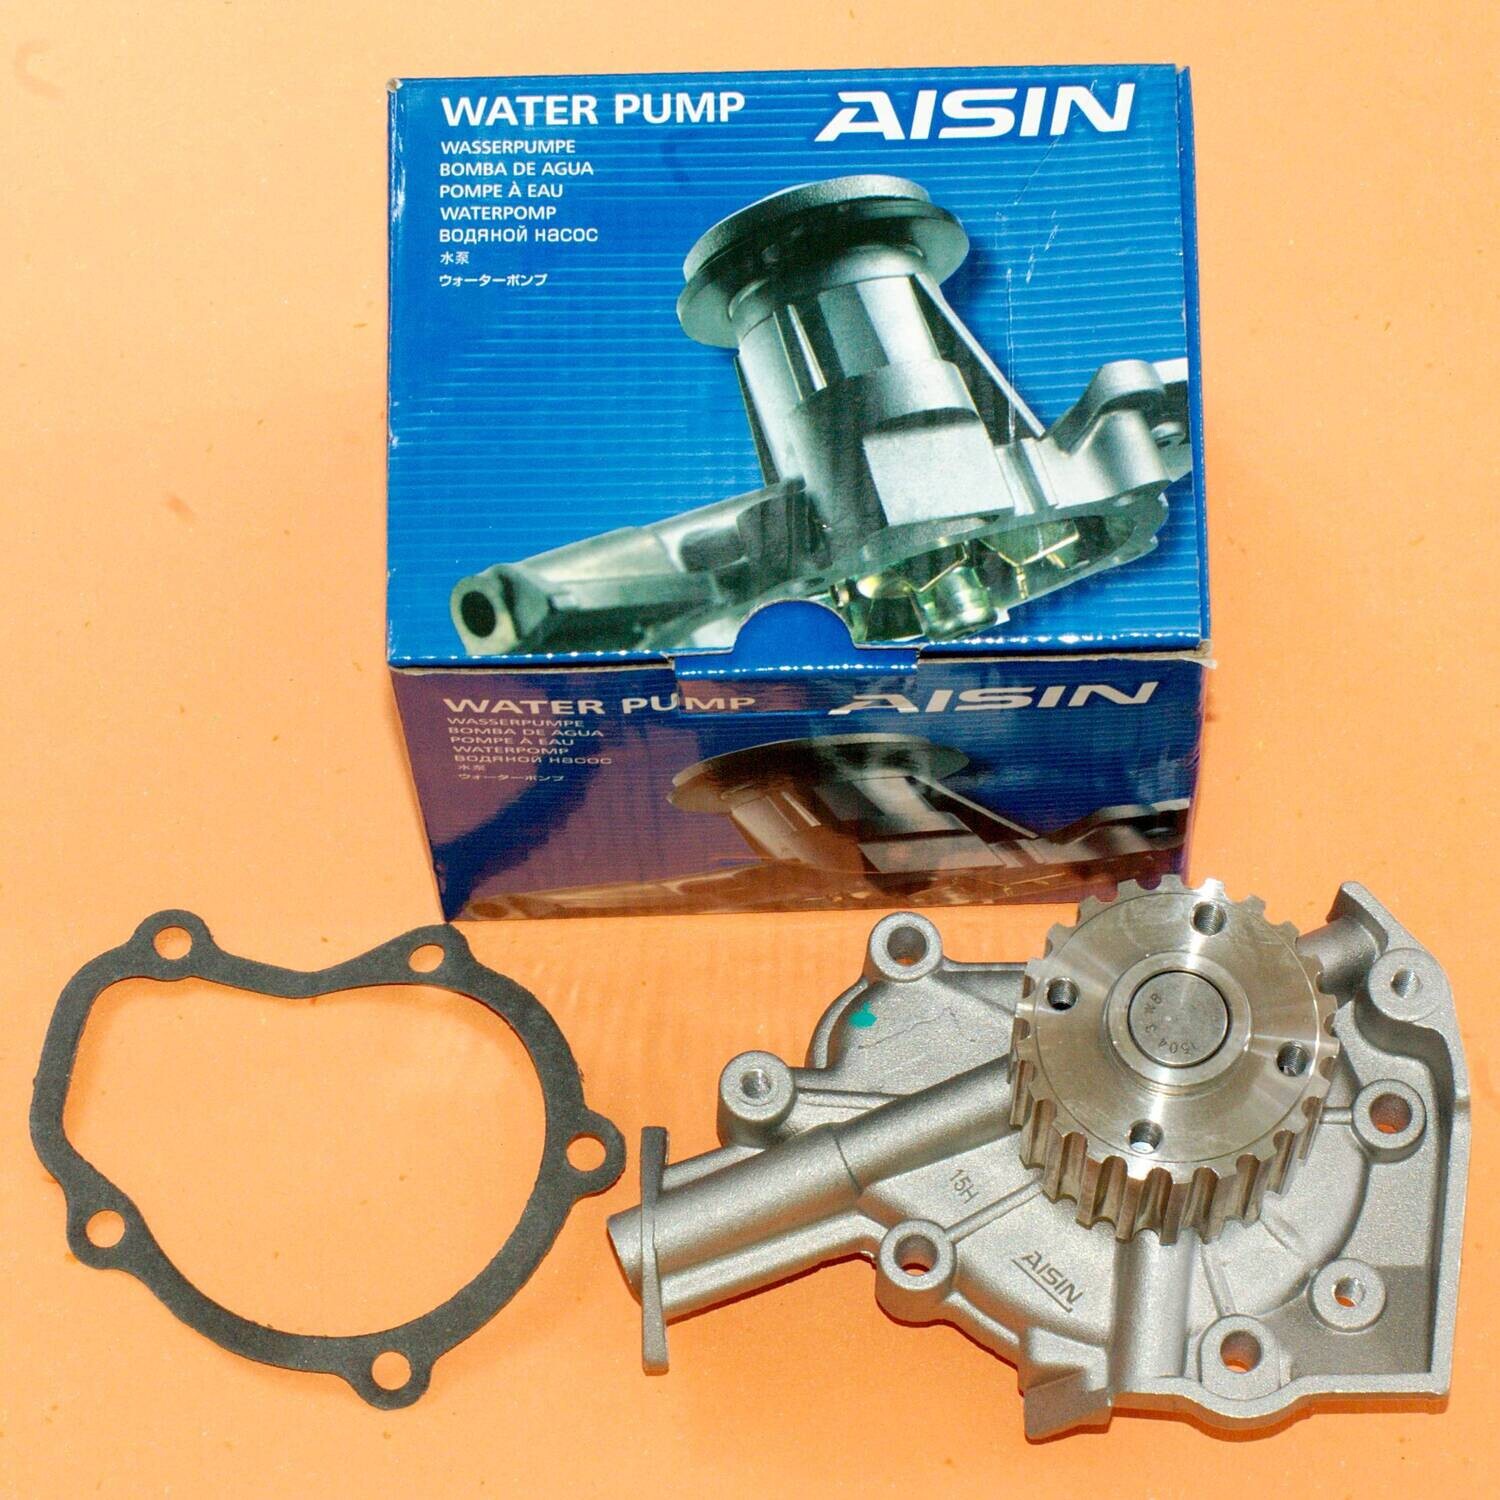 Aisin Water Pump Fits Suzuki Carry Every DB51T DB51V DA51V DA51T Mazda Scrum F6A